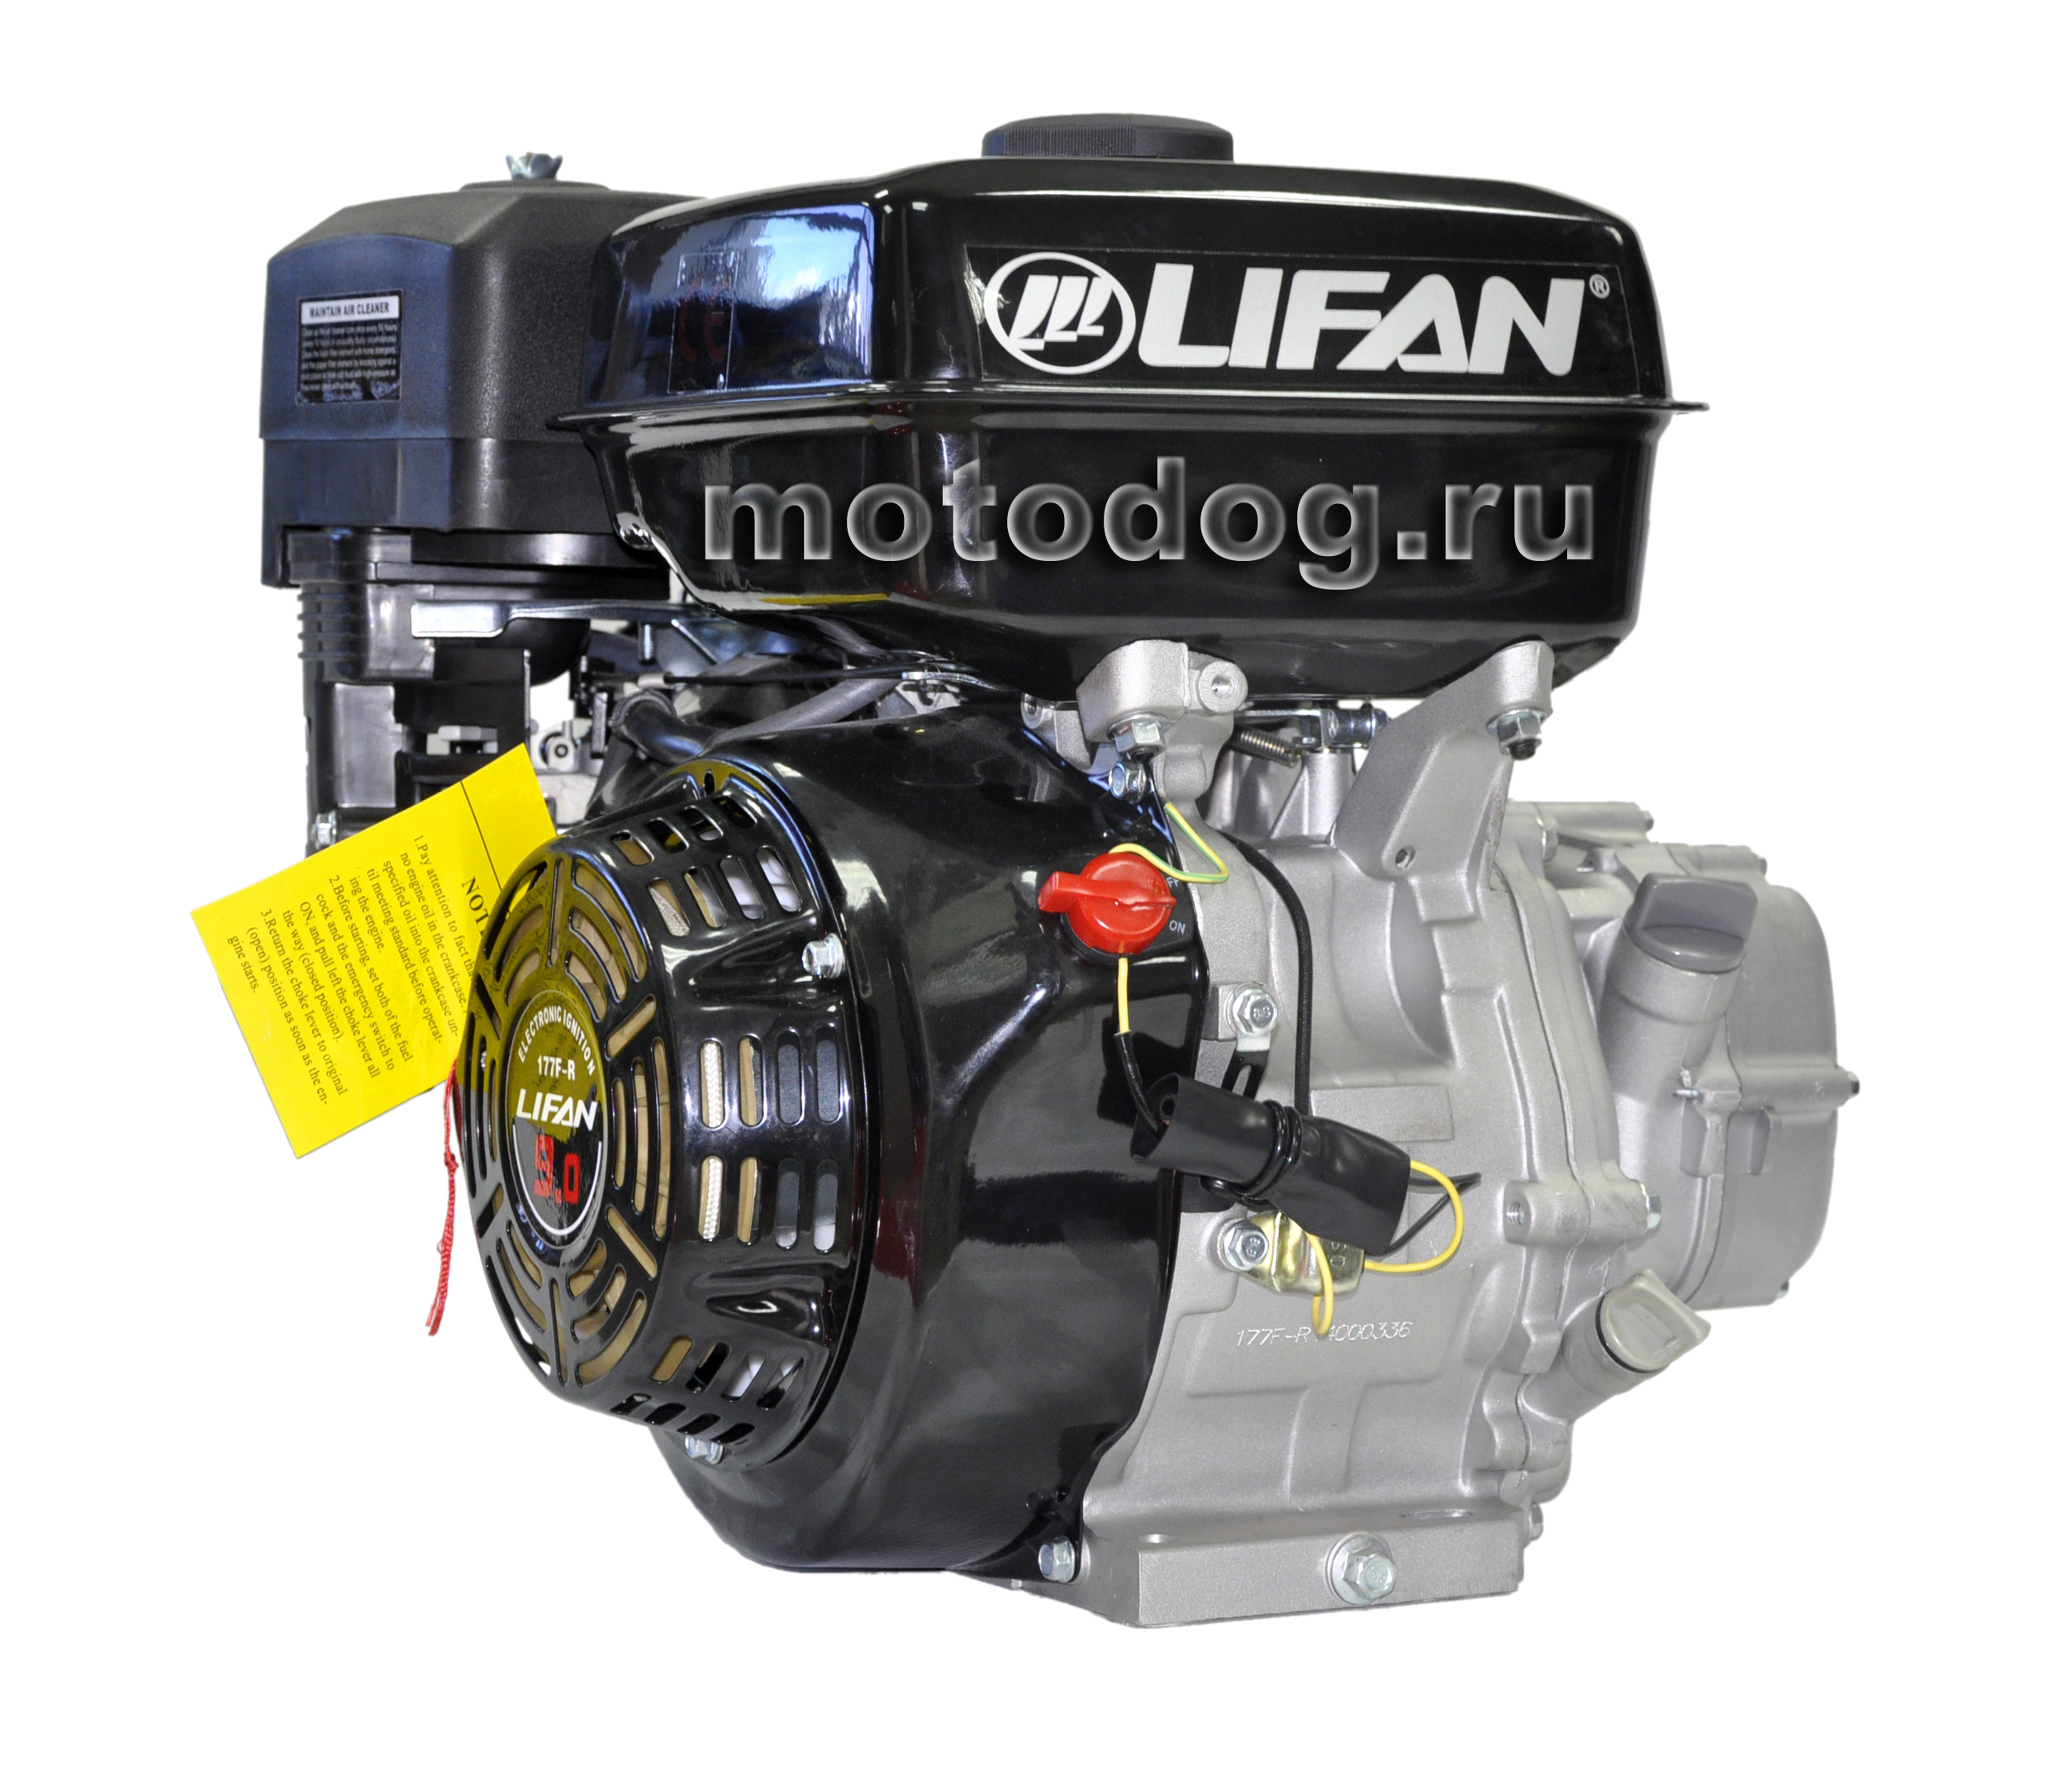 Купить двигатель лифан 9. Лифан 9.5 л.с двигатель. Двигатель Лифан 13 л.с. Двигатель Lifan 177f-r 3а. Двигатель Лифан 9 л.с 177fg.